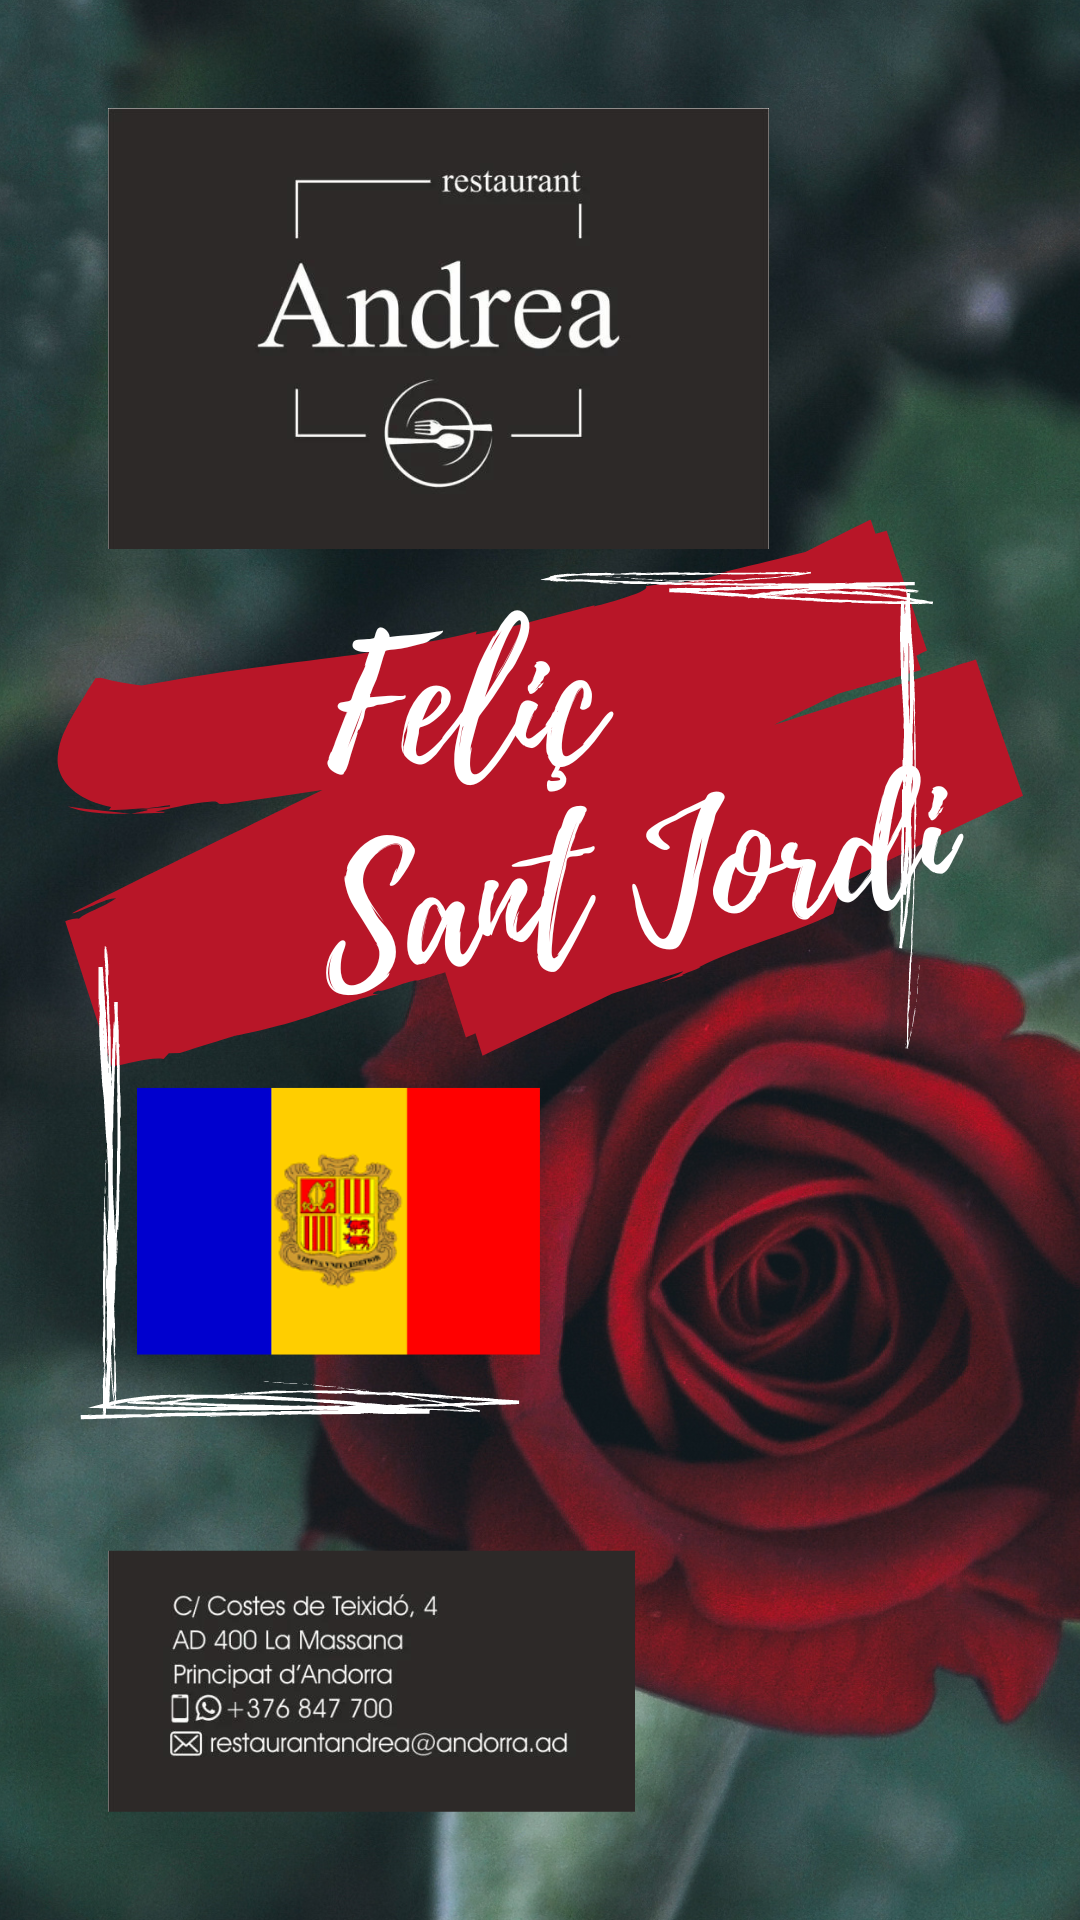 Restaurant Andrea Andorra “Obrim les pàgines de les nostres vides i omplim-les de literatura, de roses, d’amor, de creativitat… Feliç dia de Sant Jordi!“.